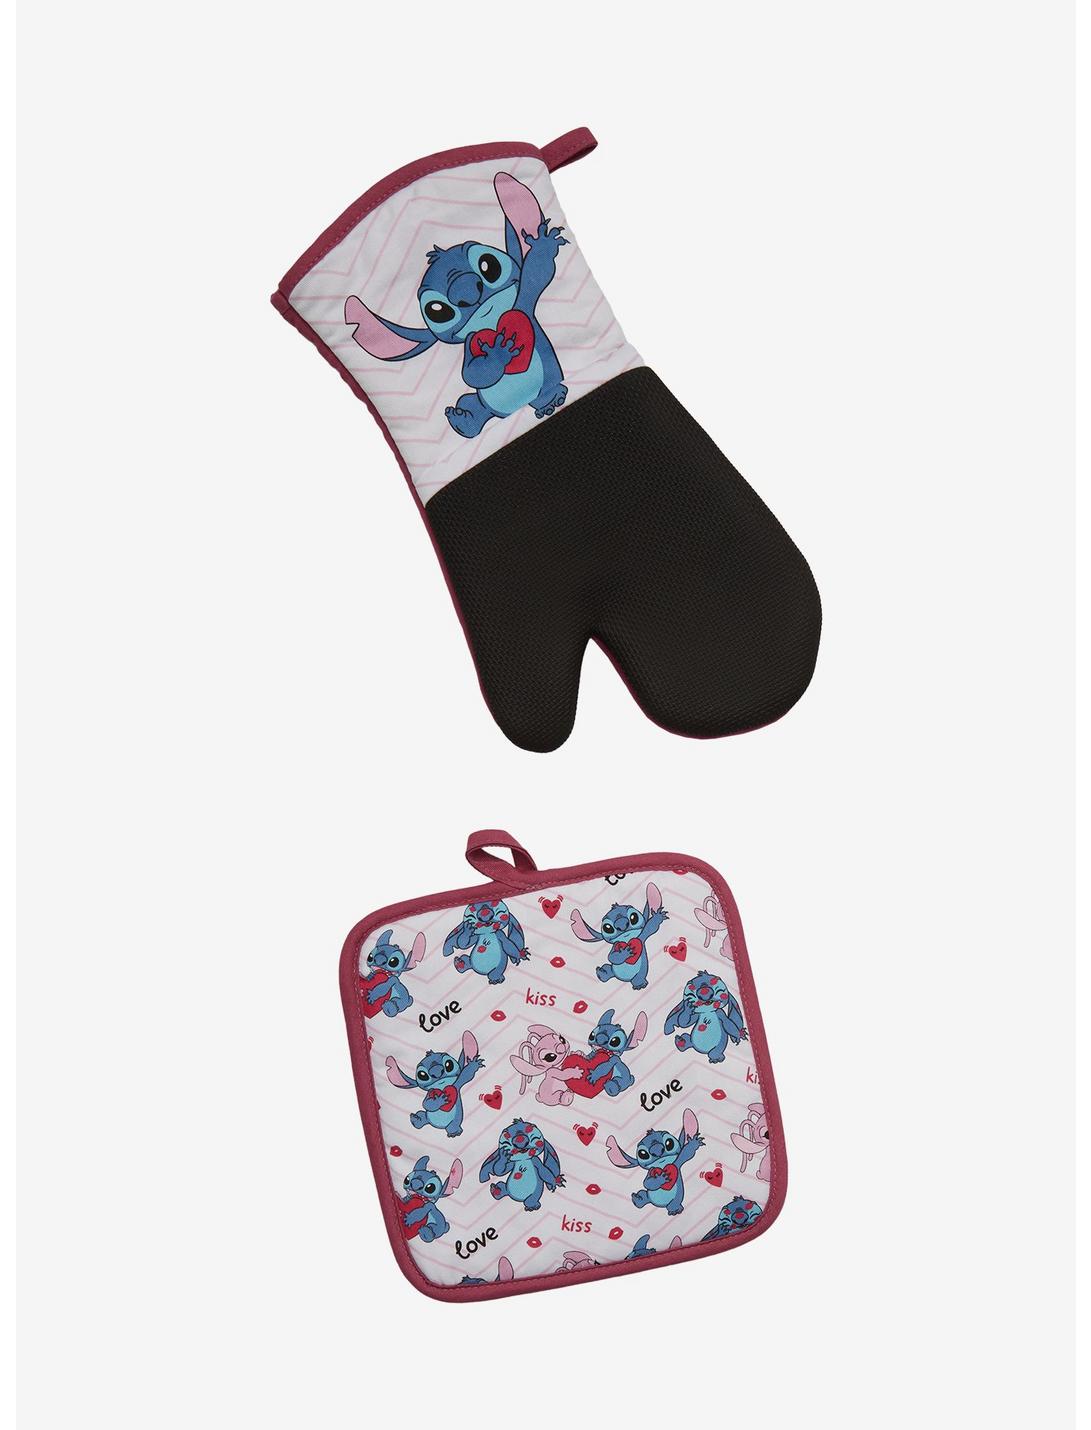 Pack Lilo & Stitch Disney - Stitch et Angel sur Cadeaux et